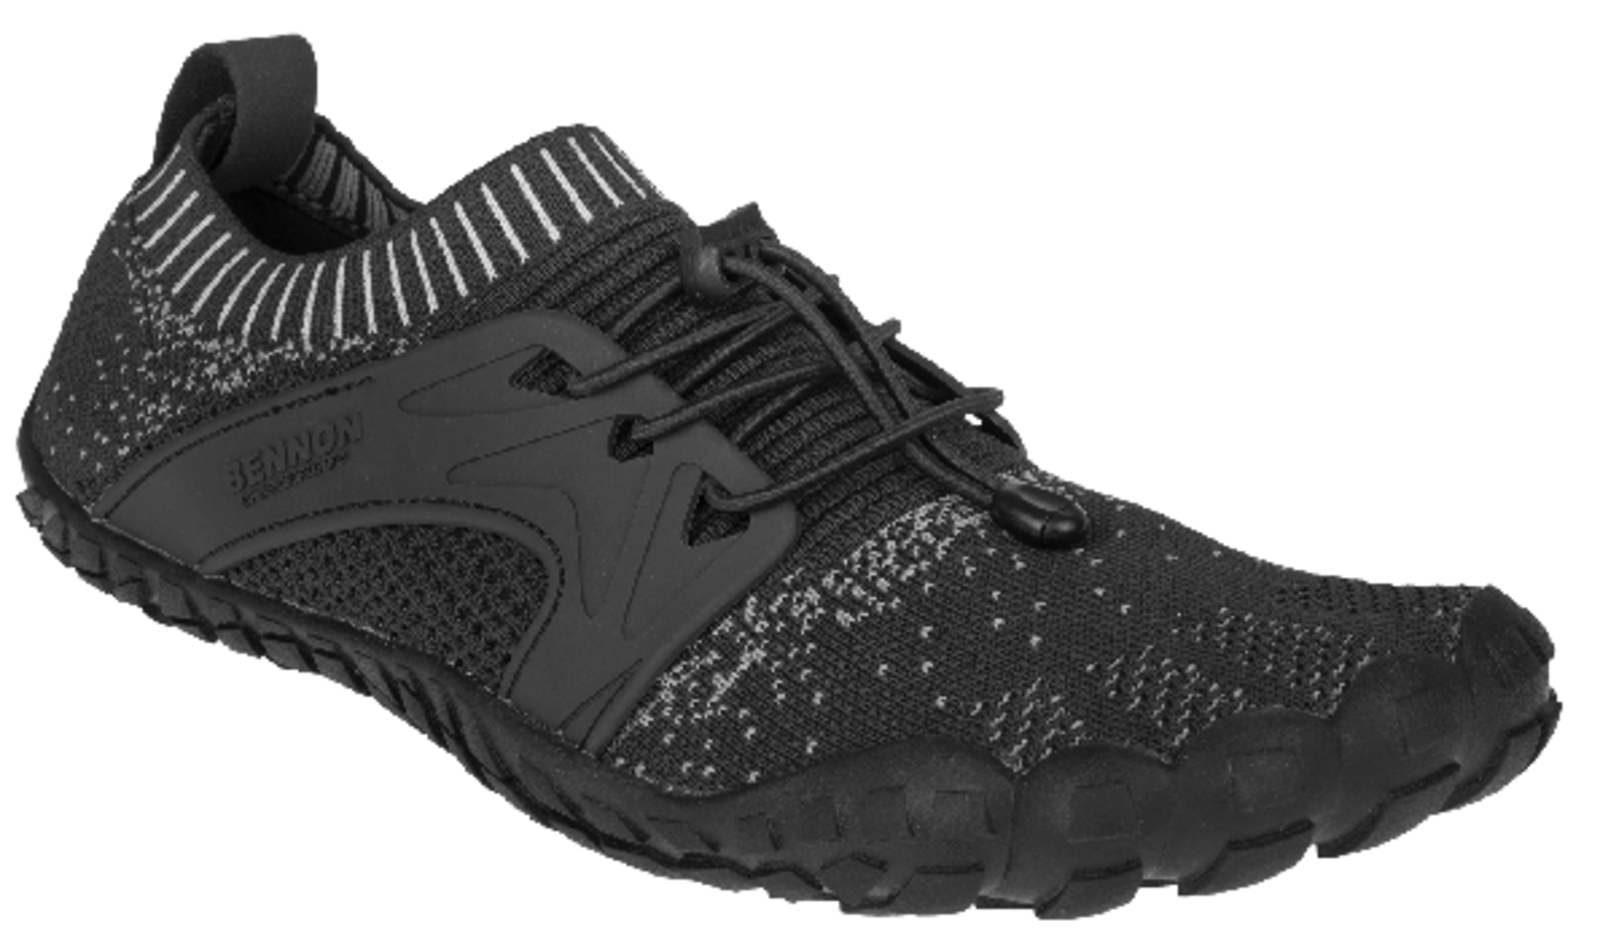 Voľnočasová barefoot obuv Bennon Bosky - veľkosť: 47, farba: čierna/biela